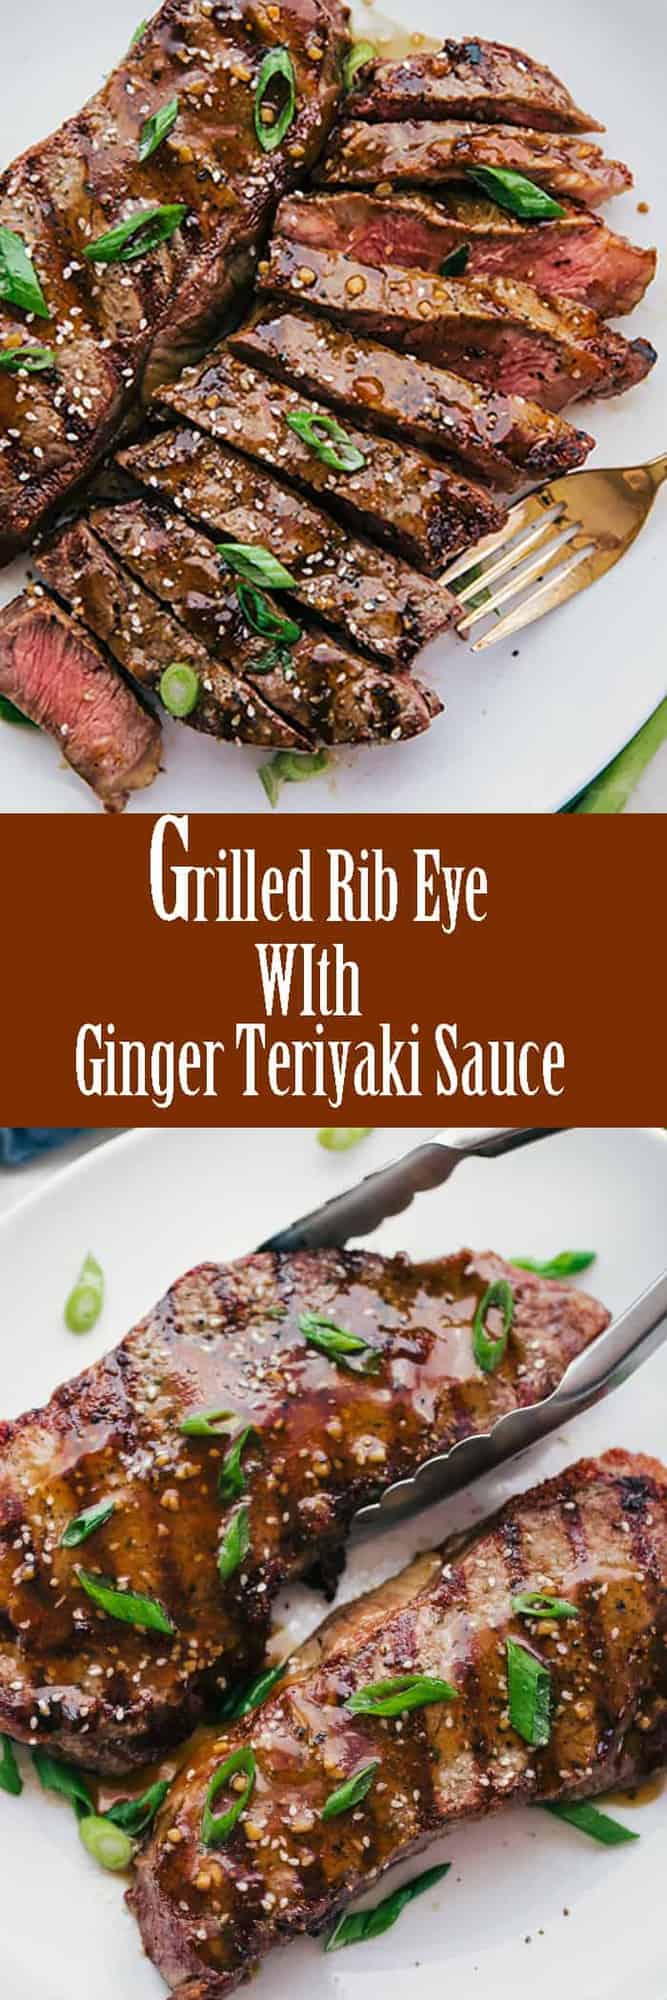 how to cook rib eye steak